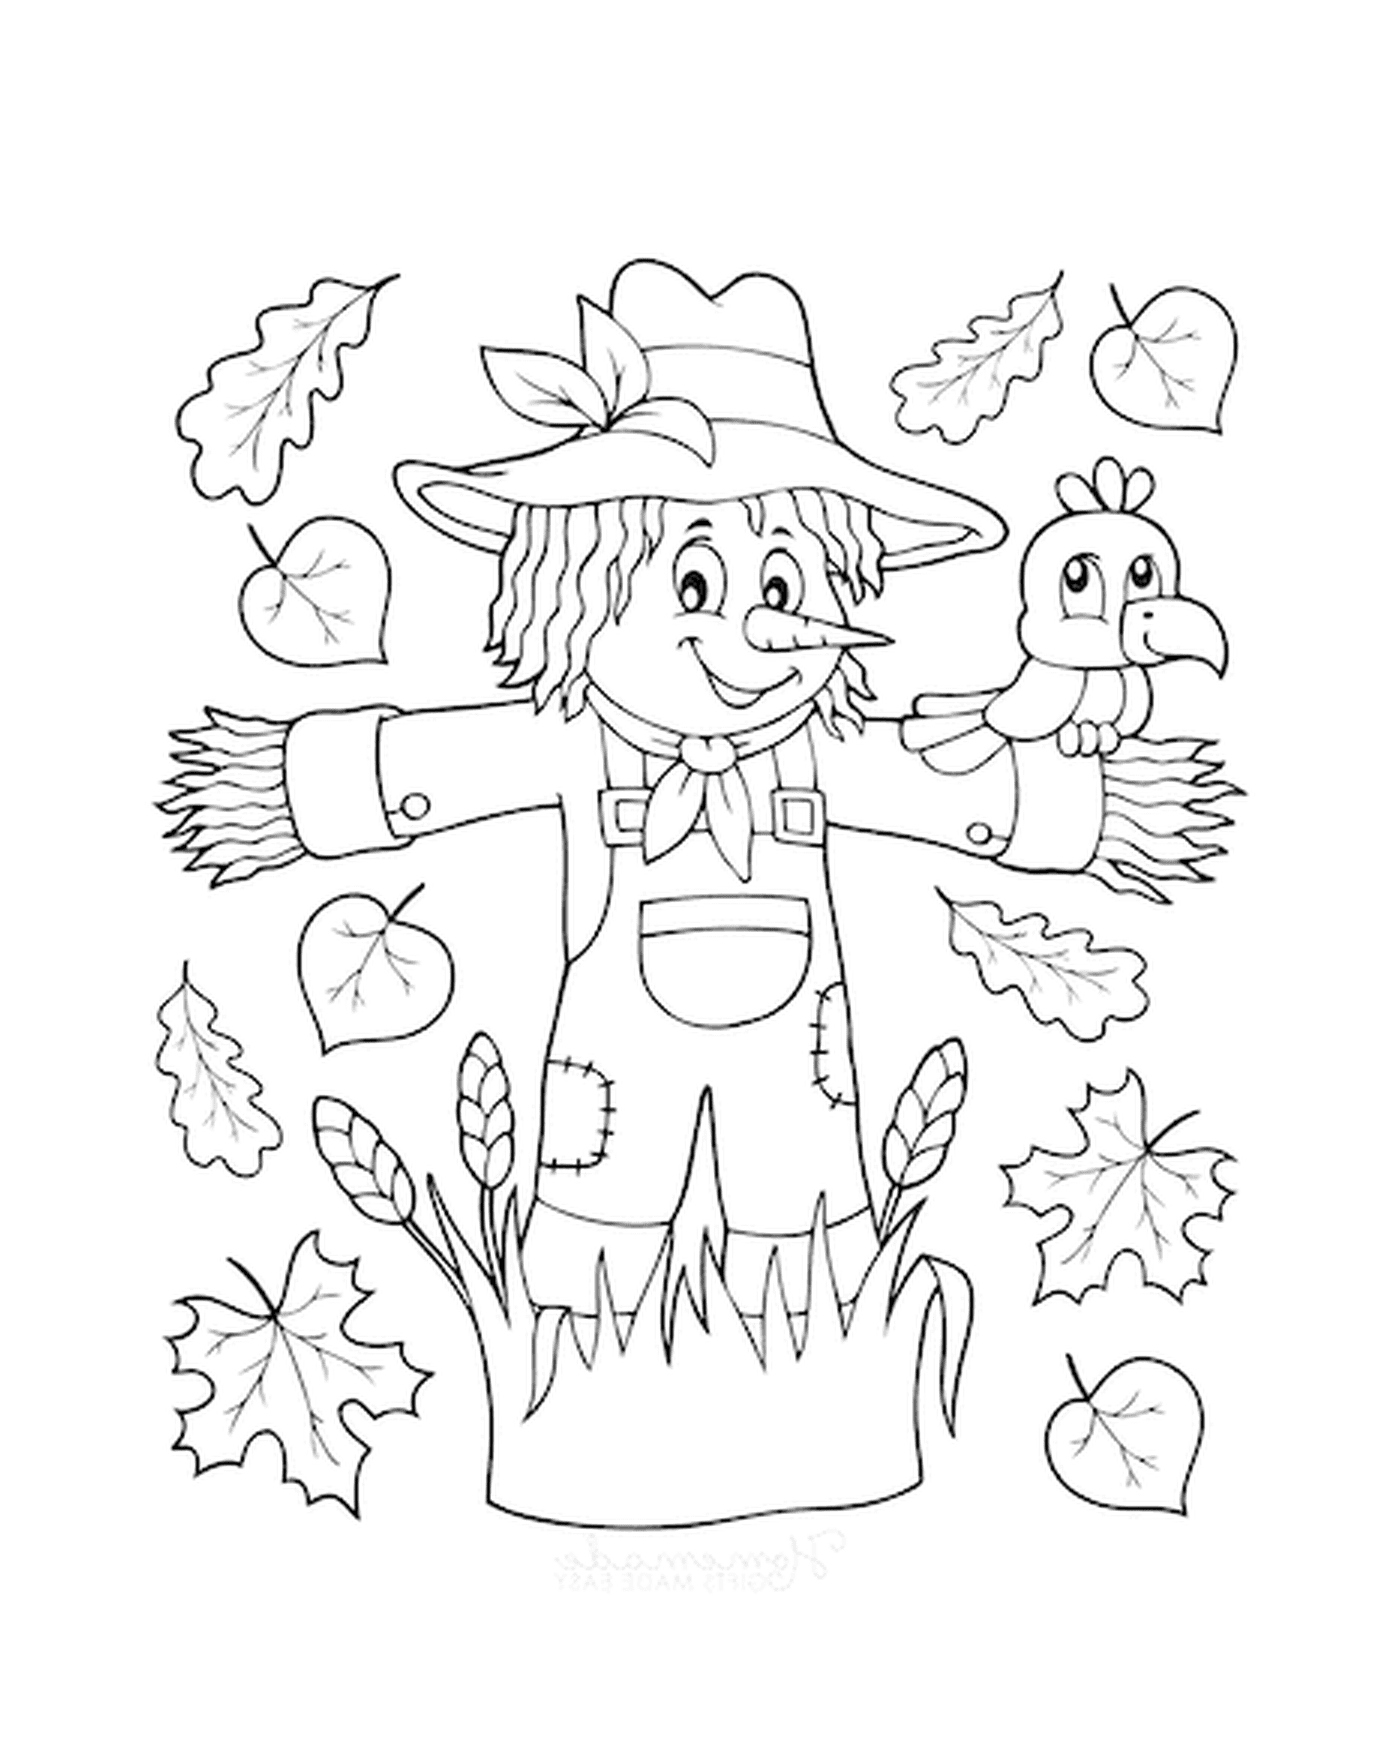  A scarecrow and a bird 